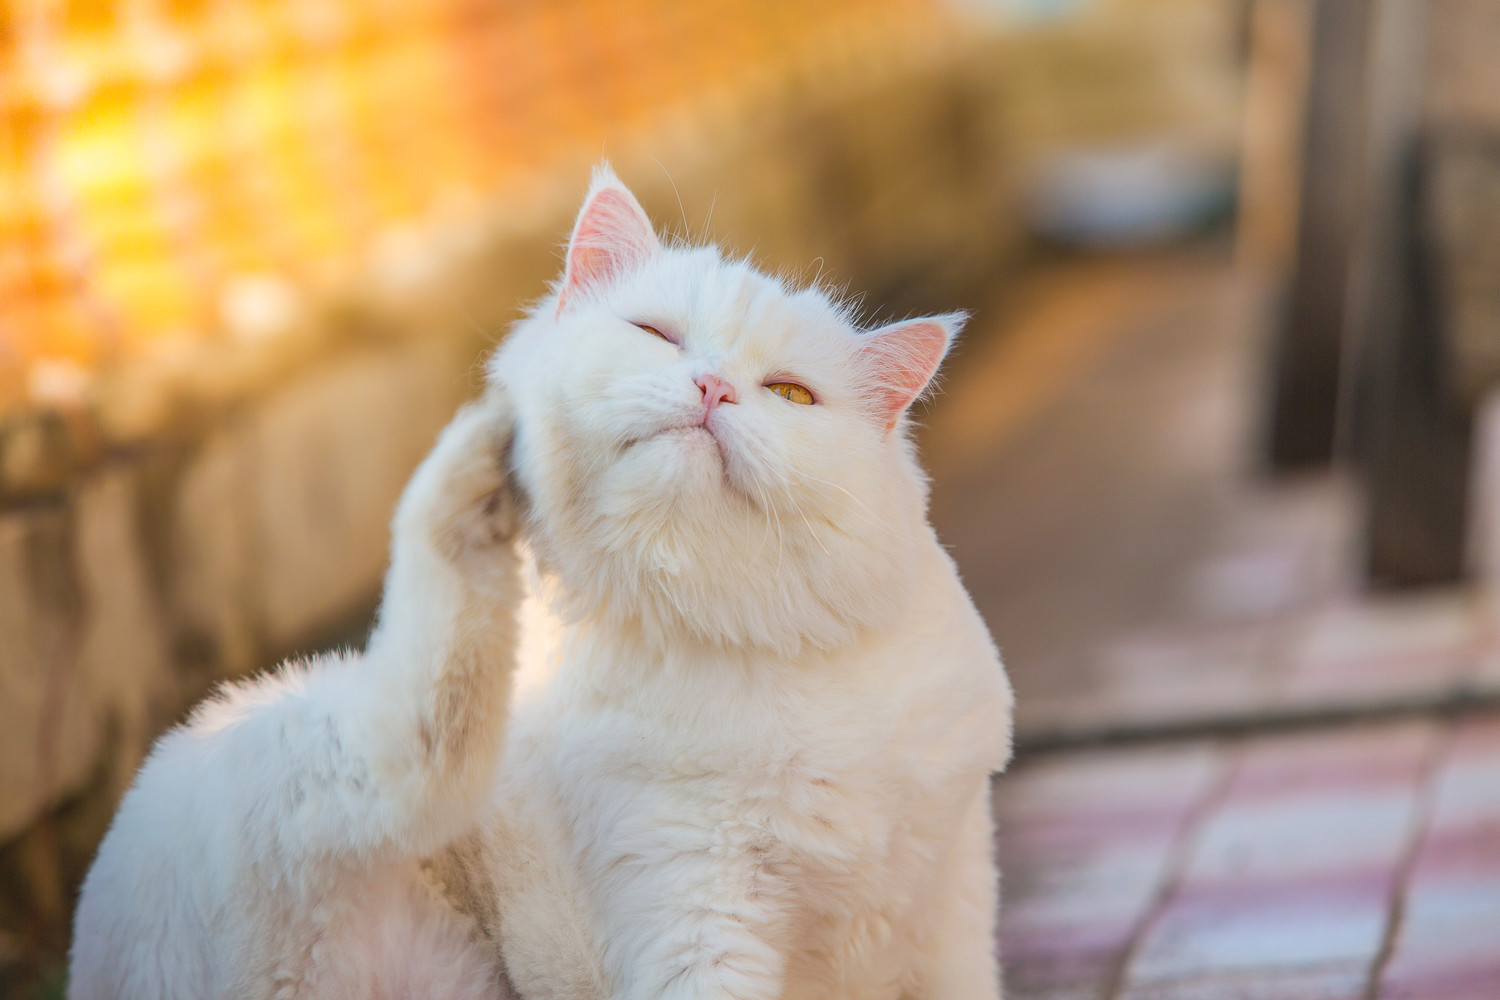 المشاكل الجلدية عند القطط: الحساسية والطفيليات والتهاب الجلد